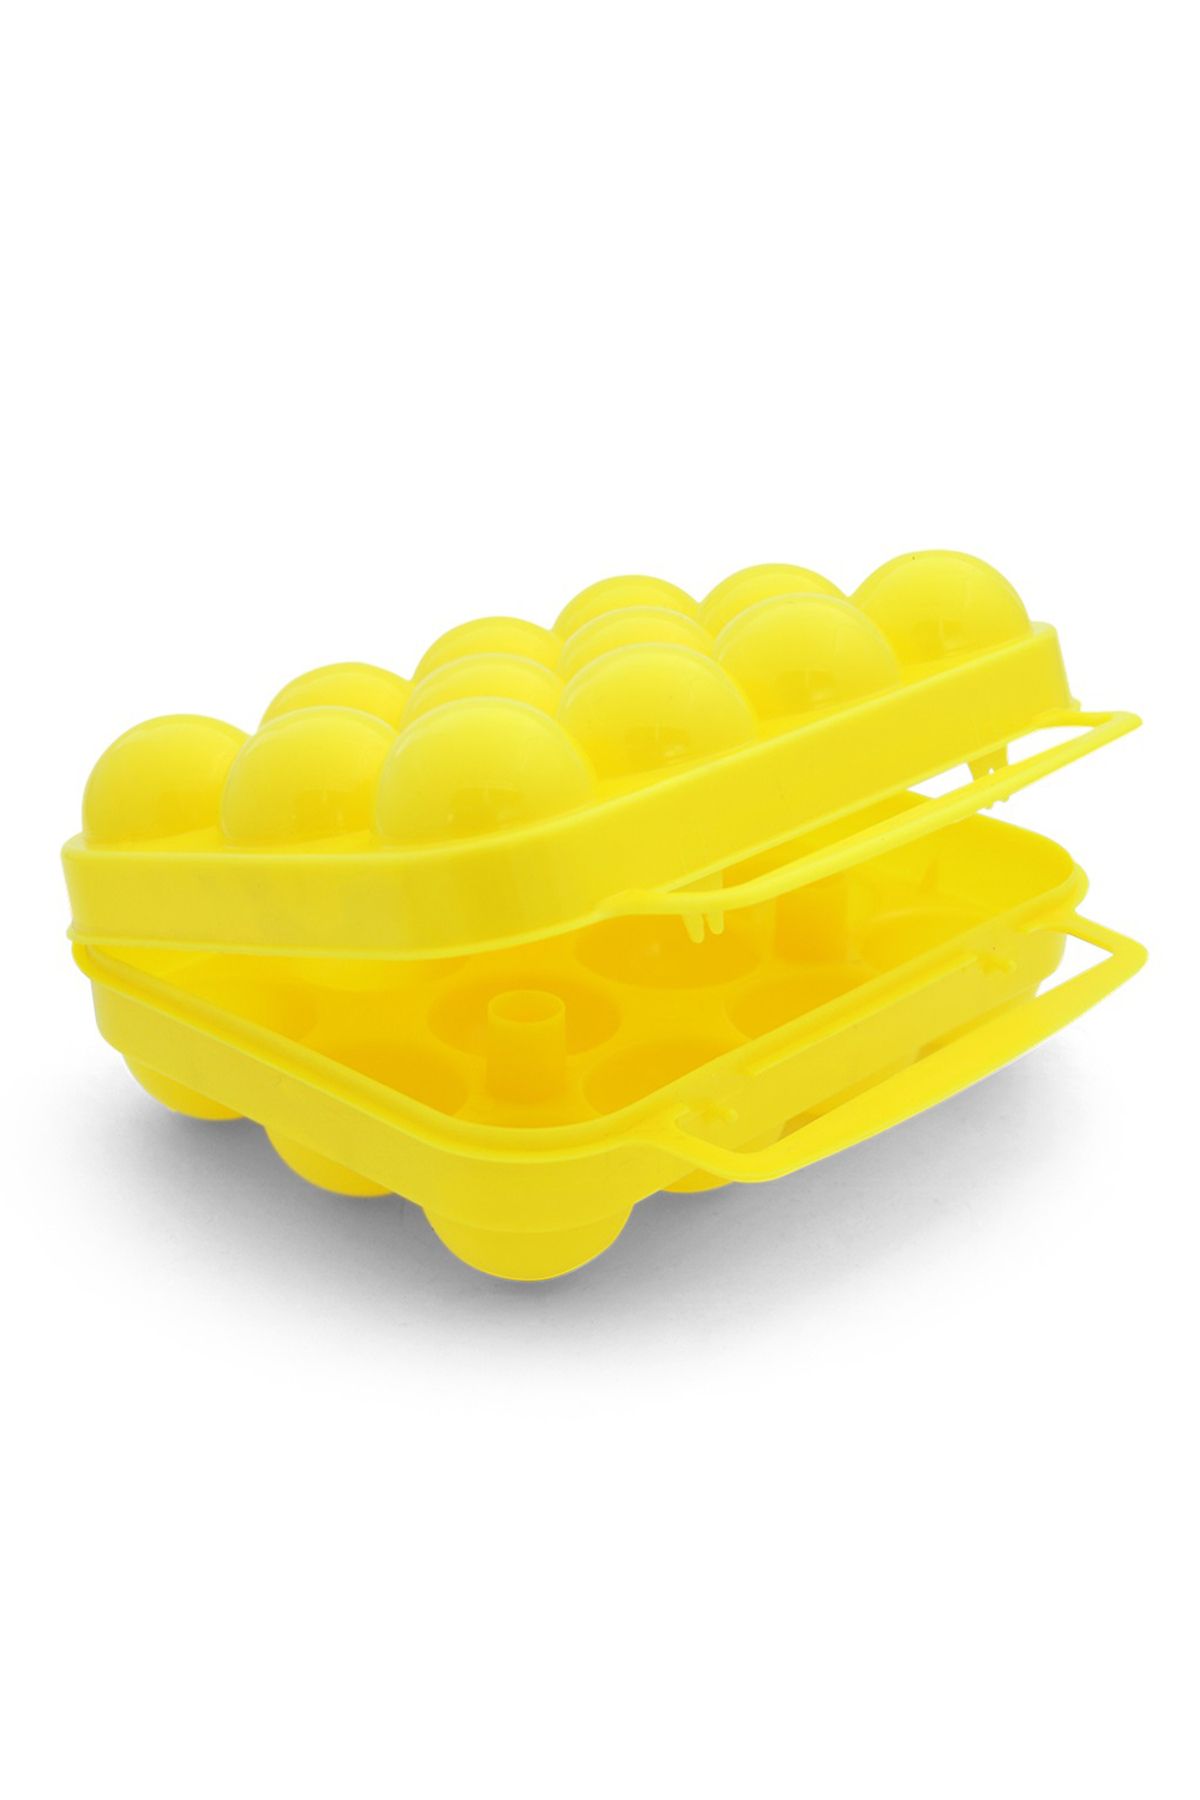 woodhub Sarı Yumurta Taşıma Kabı 12lı